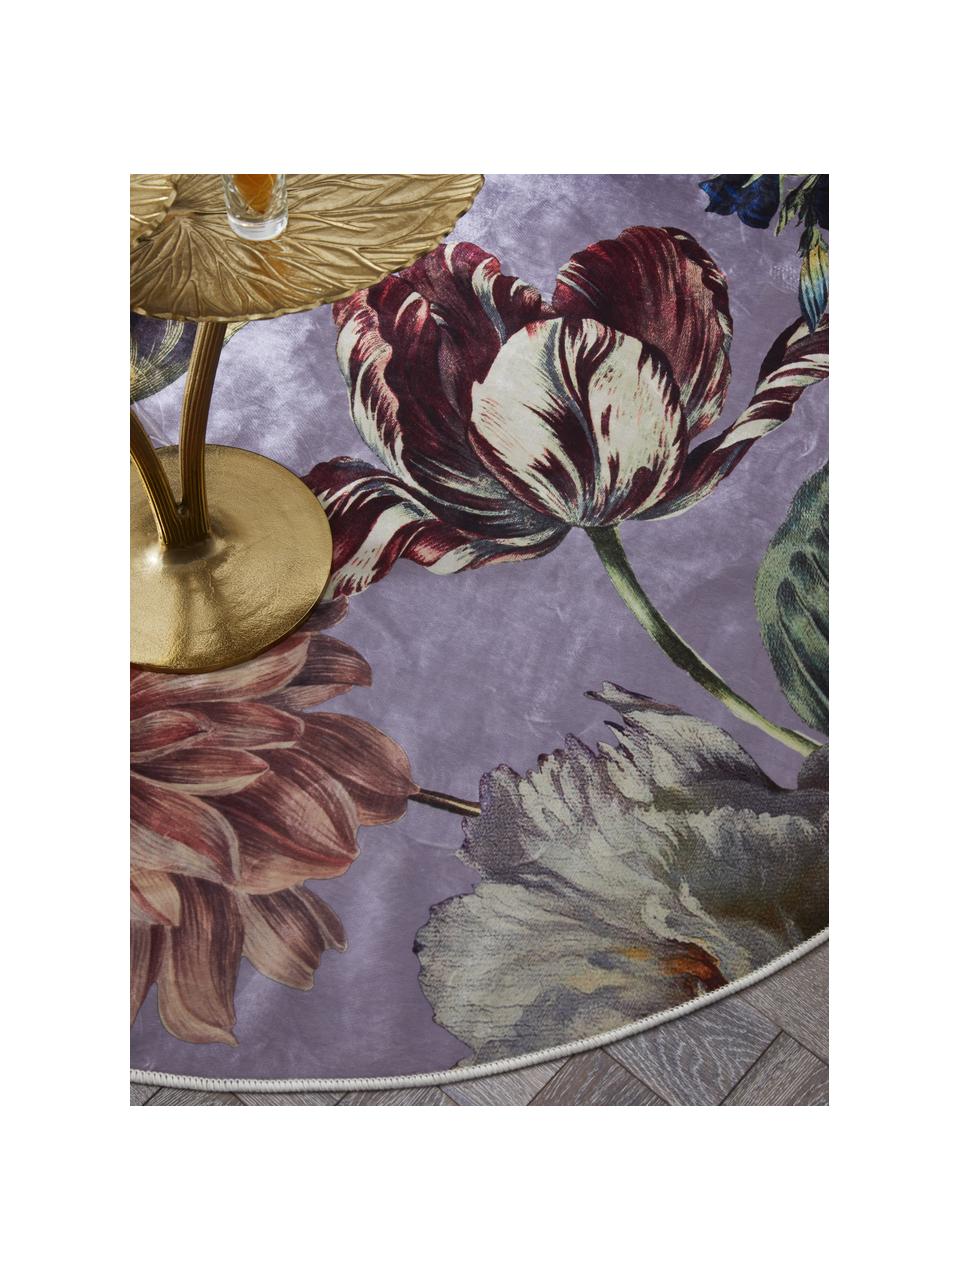 Runder Teppich Filou mit Blumenmuster, 60% Polyester, 30% thermoplastisches Polyurethan, 10% Baumwolle, Lila, Mehrfarbig, Ø 180 cm (Grösse L)